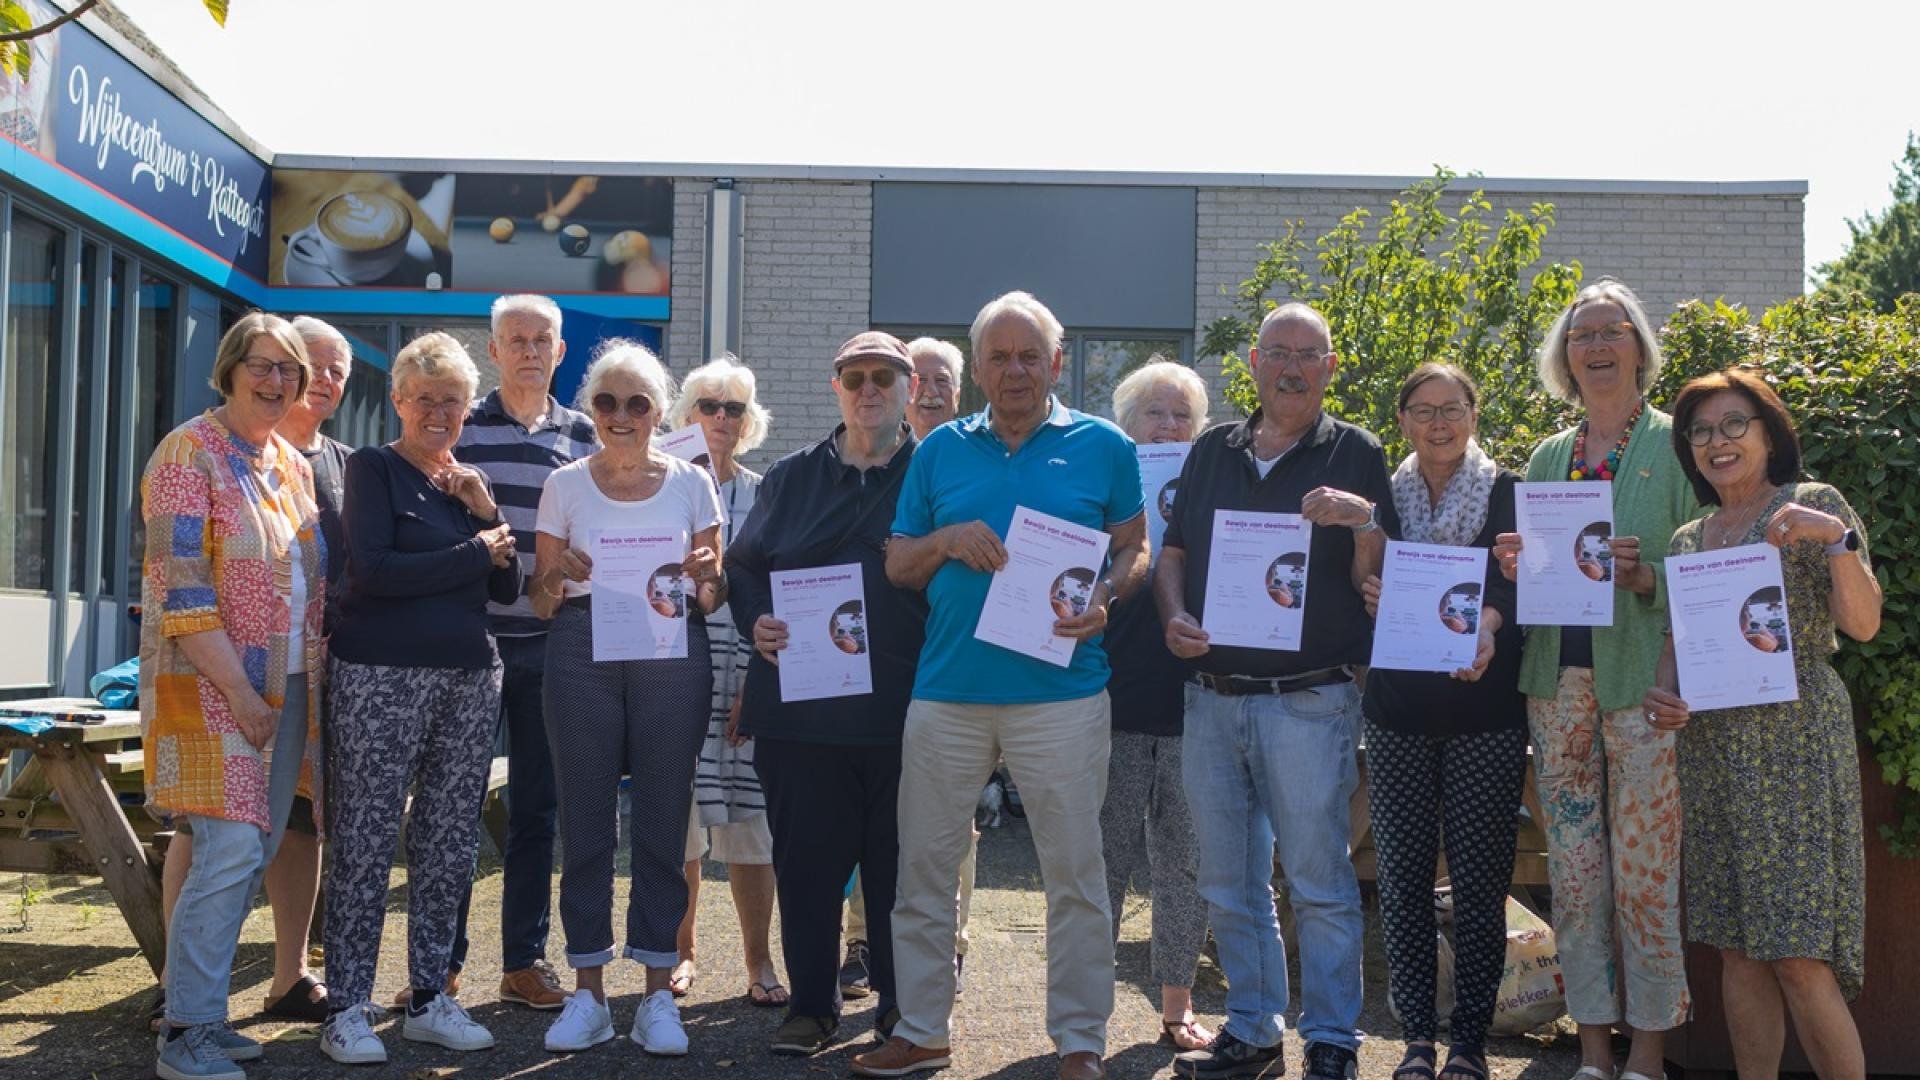 Groepsfoto van zo'n twintig mensen die een certificaat omhoog houden voor wijkcentrum t Kattegat 